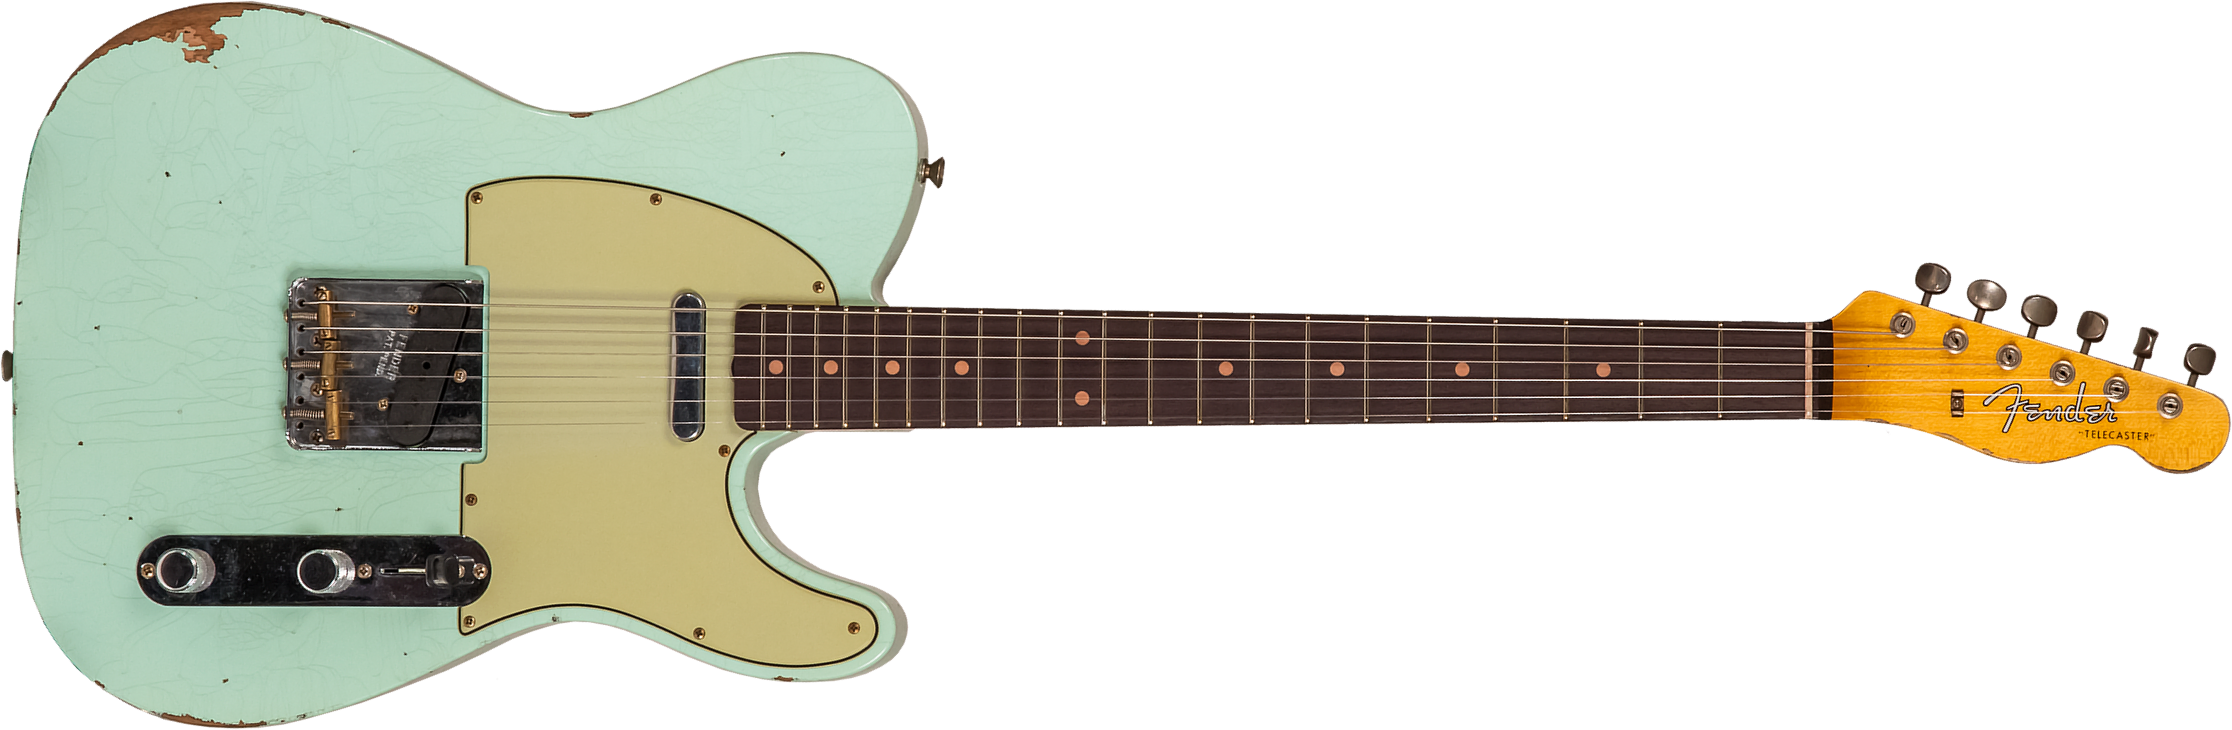 Fender Custom Shop Tele 1961 2s Ht Rw #cz565334 - Relic Faded Surf Green - Guitare Électrique Forme Tel - Main picture